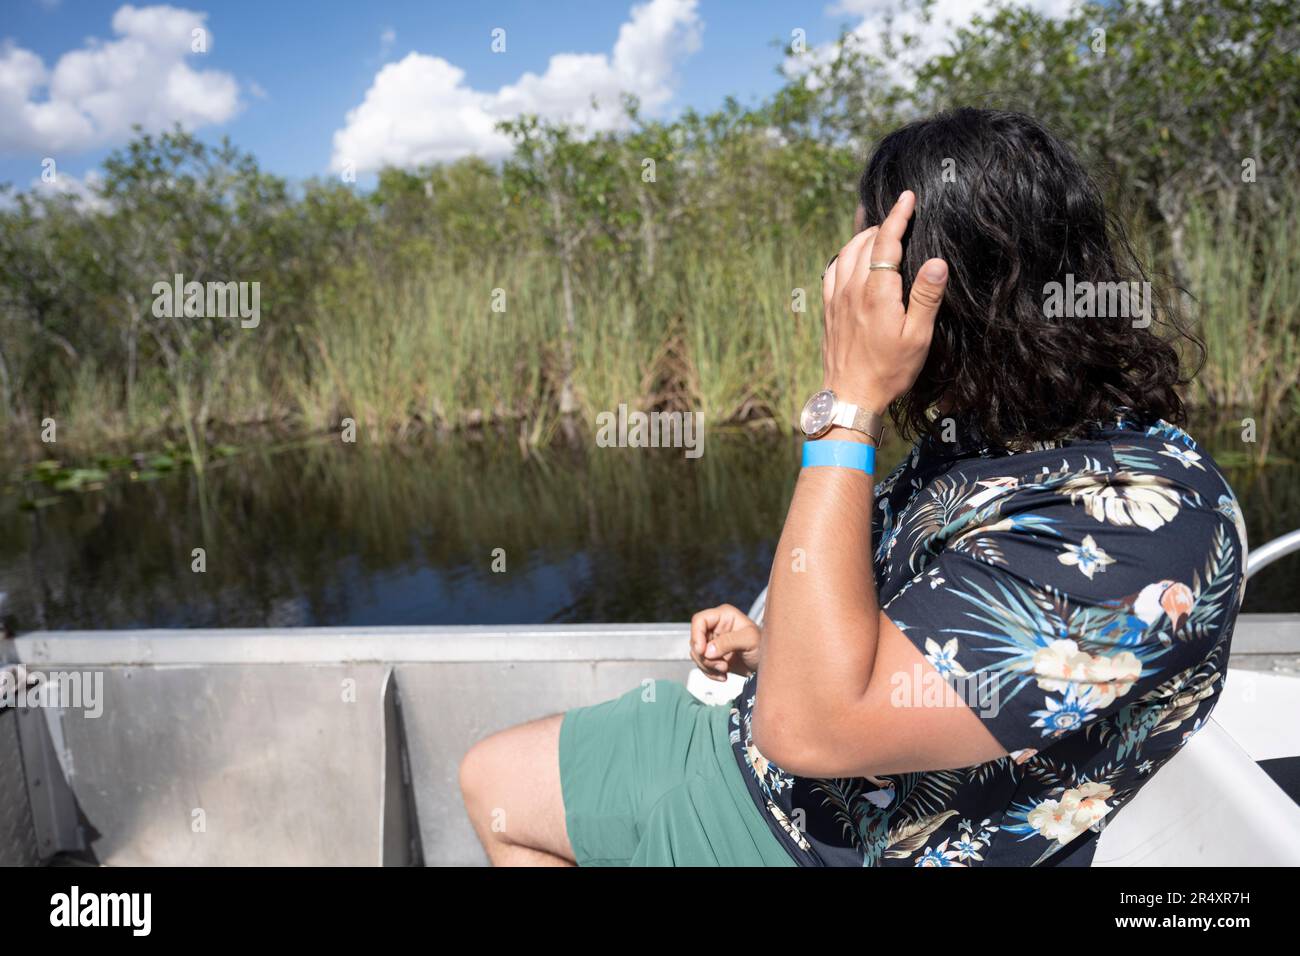 Everglades, Floride, États-Unis. 8th mai 2023. Un touriste regardant les scènes de la nature lors d'une promenade en hydroglisseur.le parc national des Everglades est une merveille naturelle captivante en Floride, aux États-Unis. S'étendant sur plus de 1,5 millions d'acres, il abrite divers écosystèmes, y compris des terres humides, des mangroves et des prairies à herbes hautes. Les visiteurs peuvent explorer sa faune unique, comme les alligators, les oiseaux aquatiques et les lamantins, par la randonnée pédestre, le kayak, ou en prenant des visites guidées, immergeant dans sa beauté à couper le souffle. Écologie, espèces envahissantes, changement climatique, environnement, environnement, crise climatique, réchauffement climatique, vert, Banque D'Images